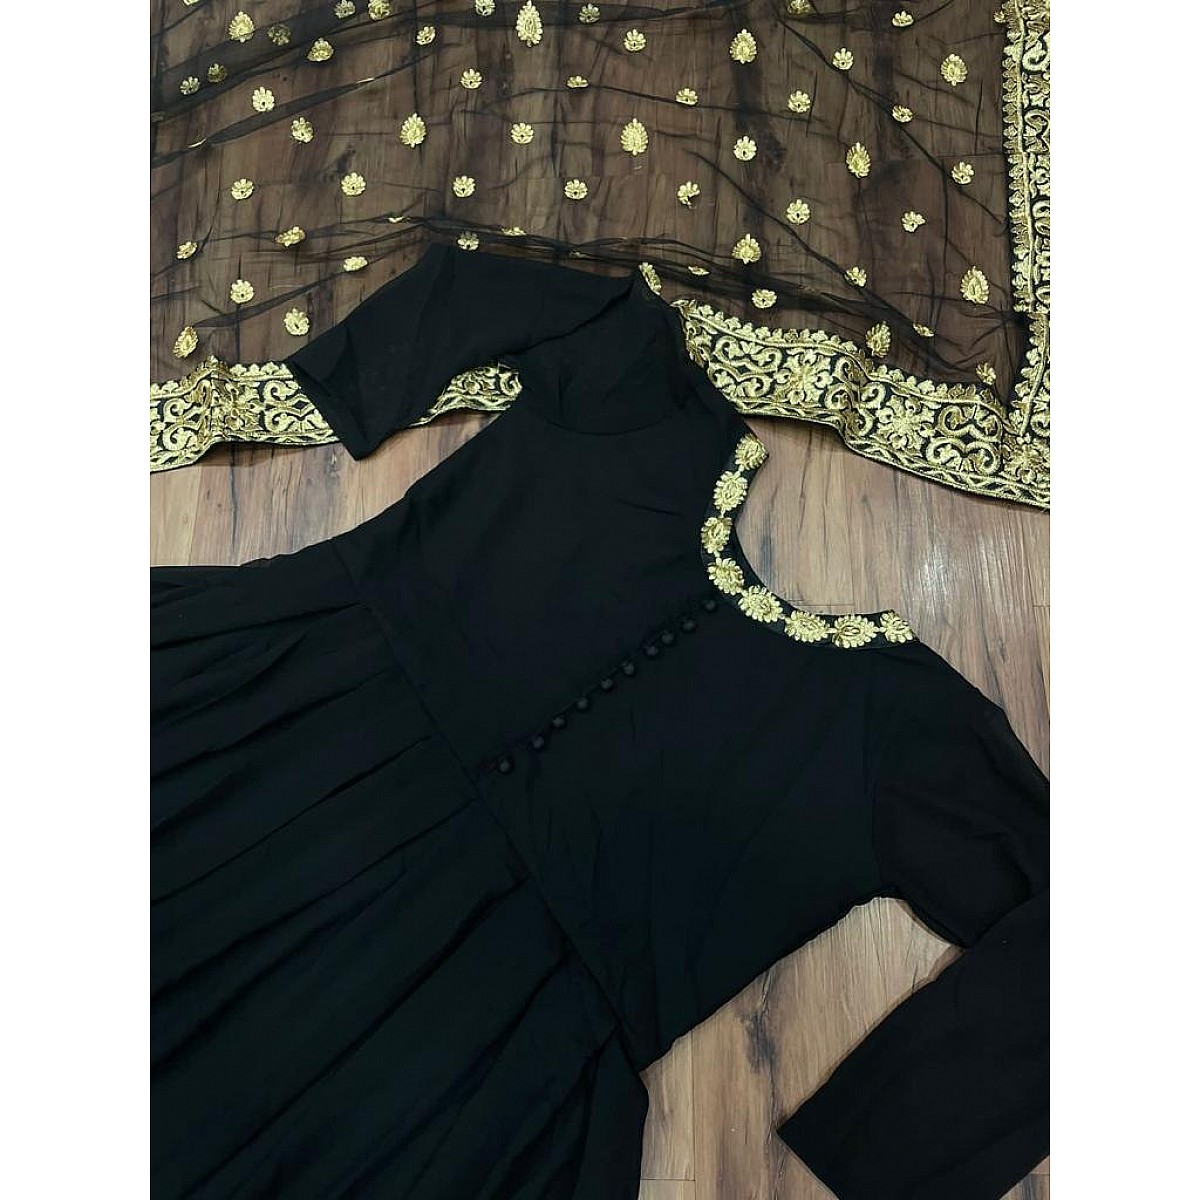 Anarkali Suits : Black georgette beautiful partywear anarkali ...